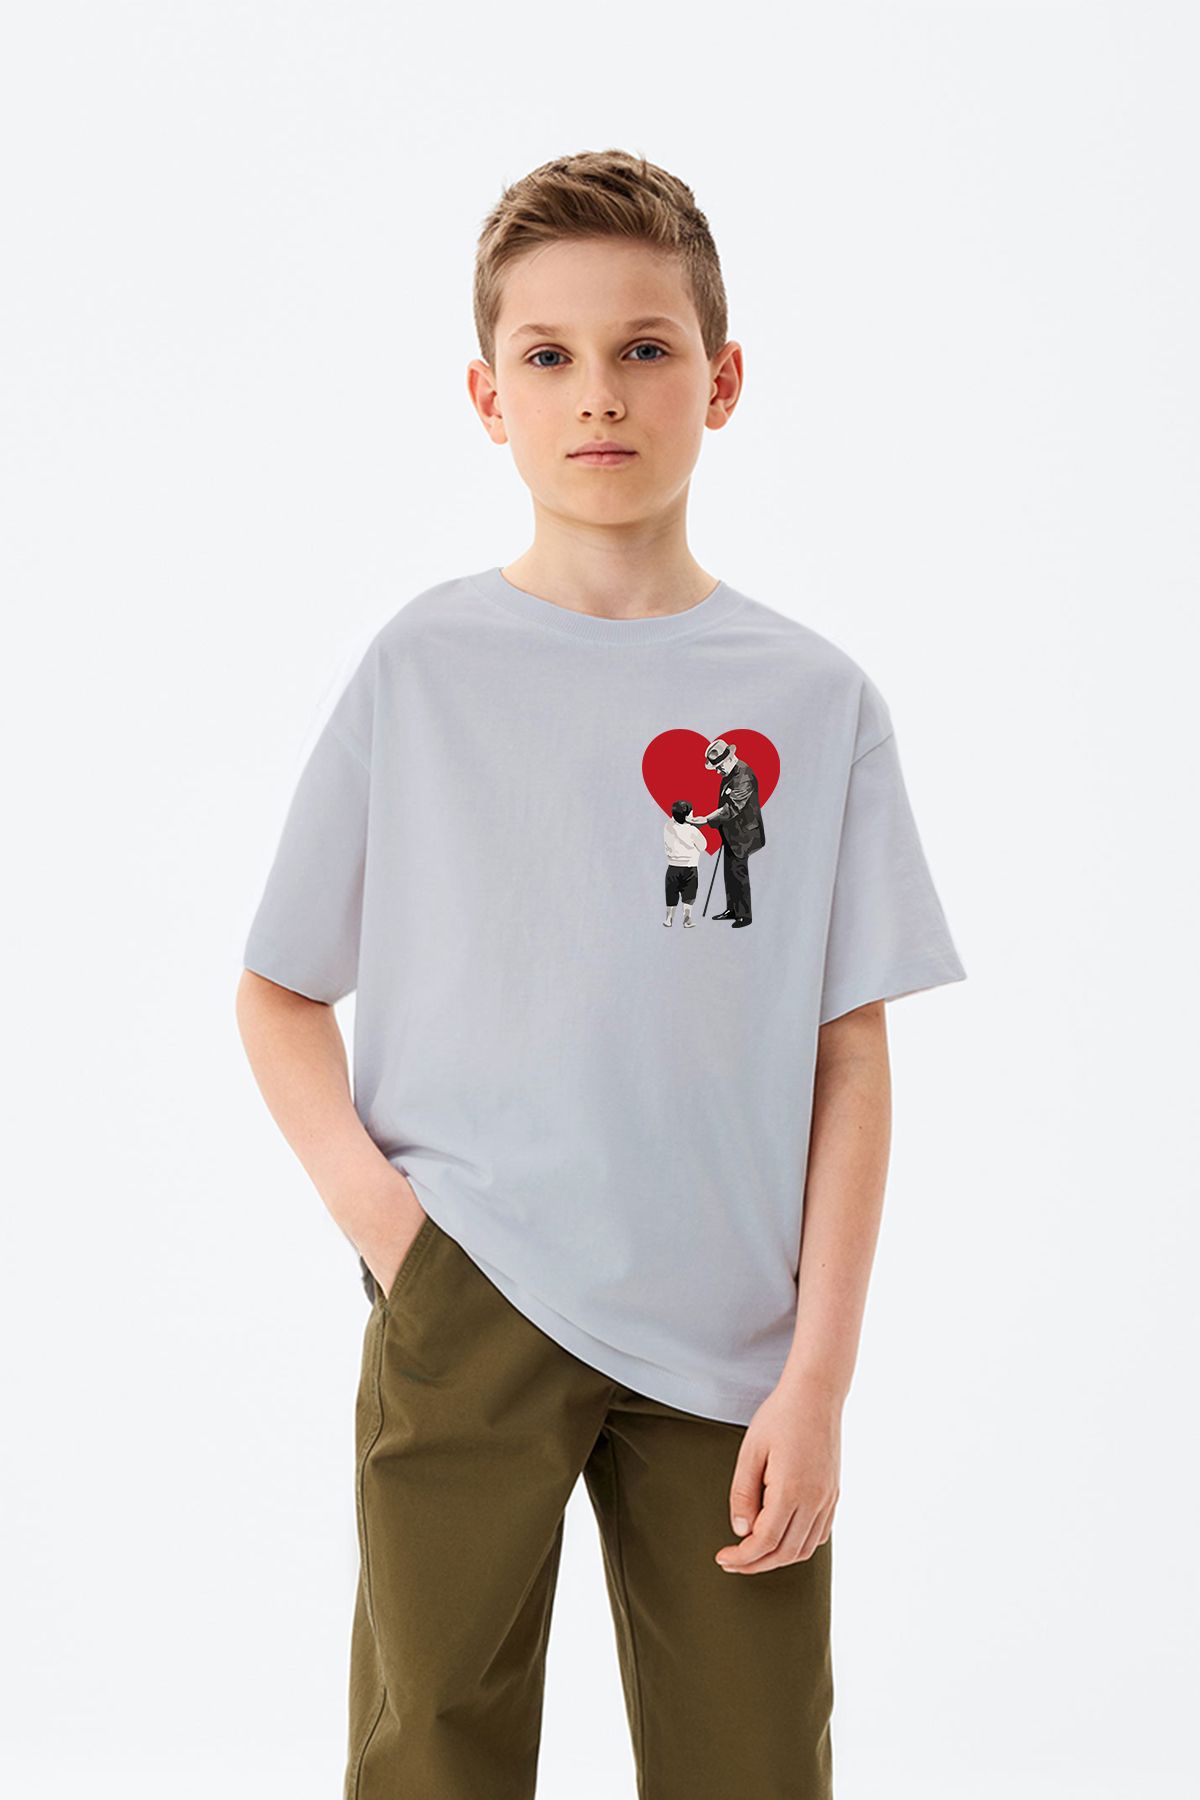 ADABEBEK Çocuk kalbinde ki Atatürk Sevgisi Temalı Baskılı 23 Nisan Özel Erkek Çocuk Tişört